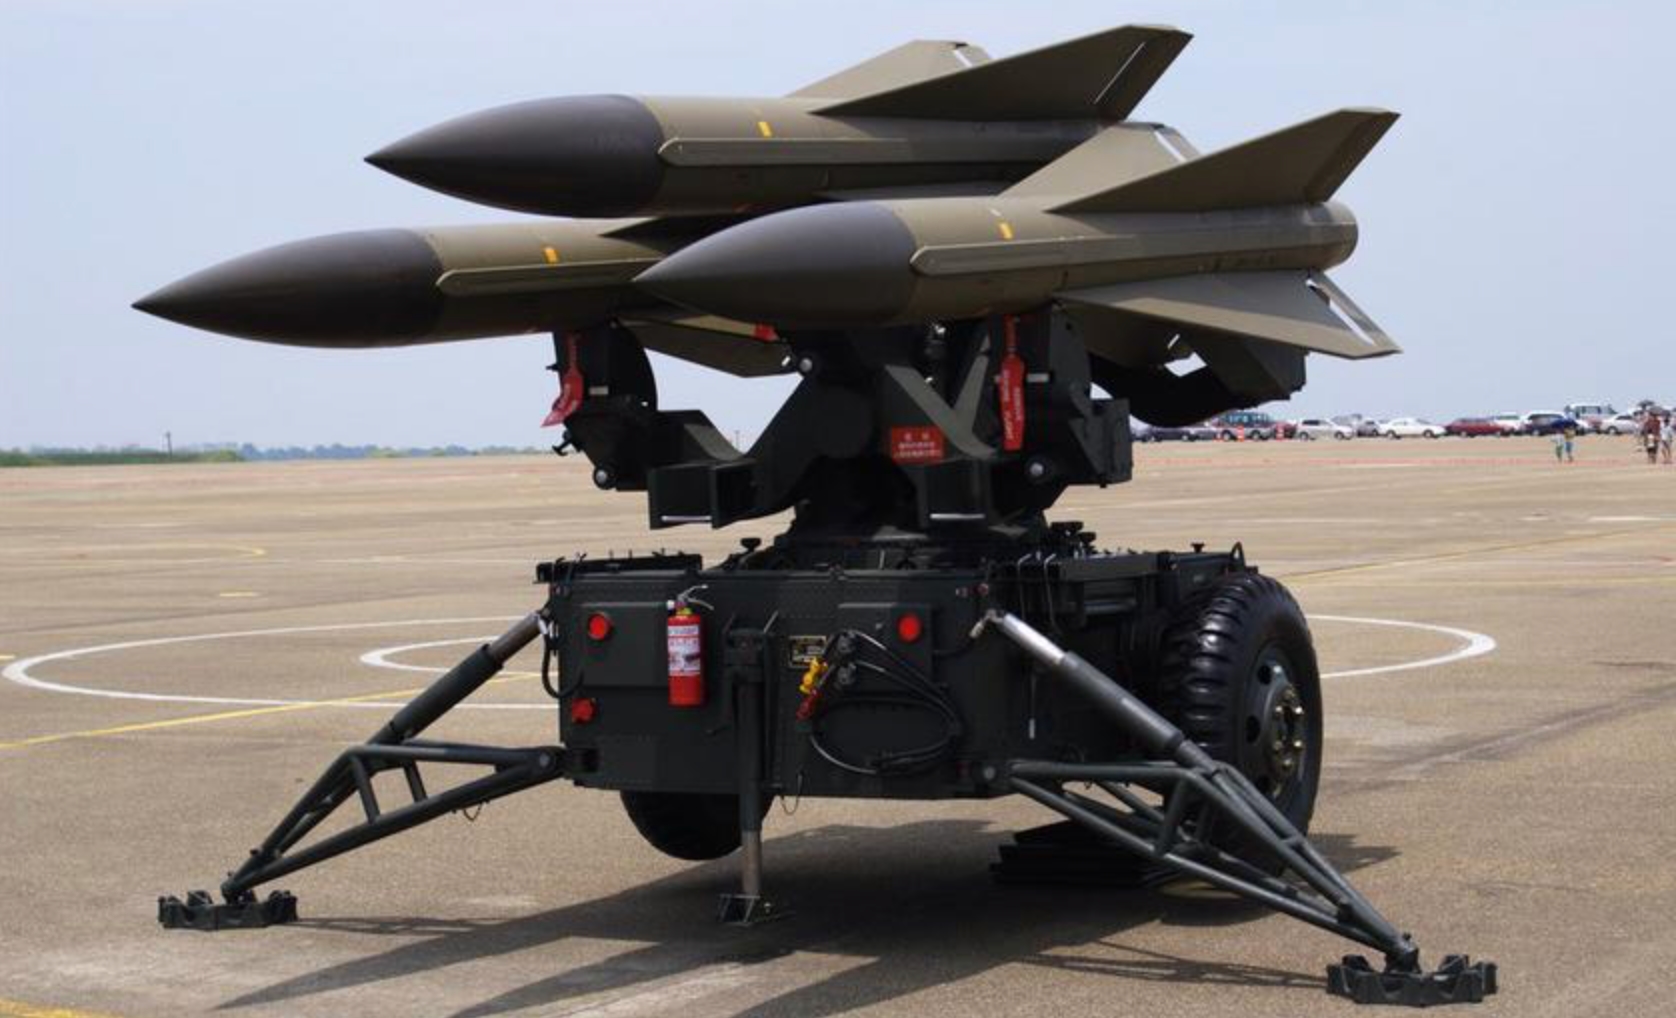 Die Ukraine erhält demnächst ein neues Militärhilfepaket aus Spanien, das 4 Hawk SAMs umfasst